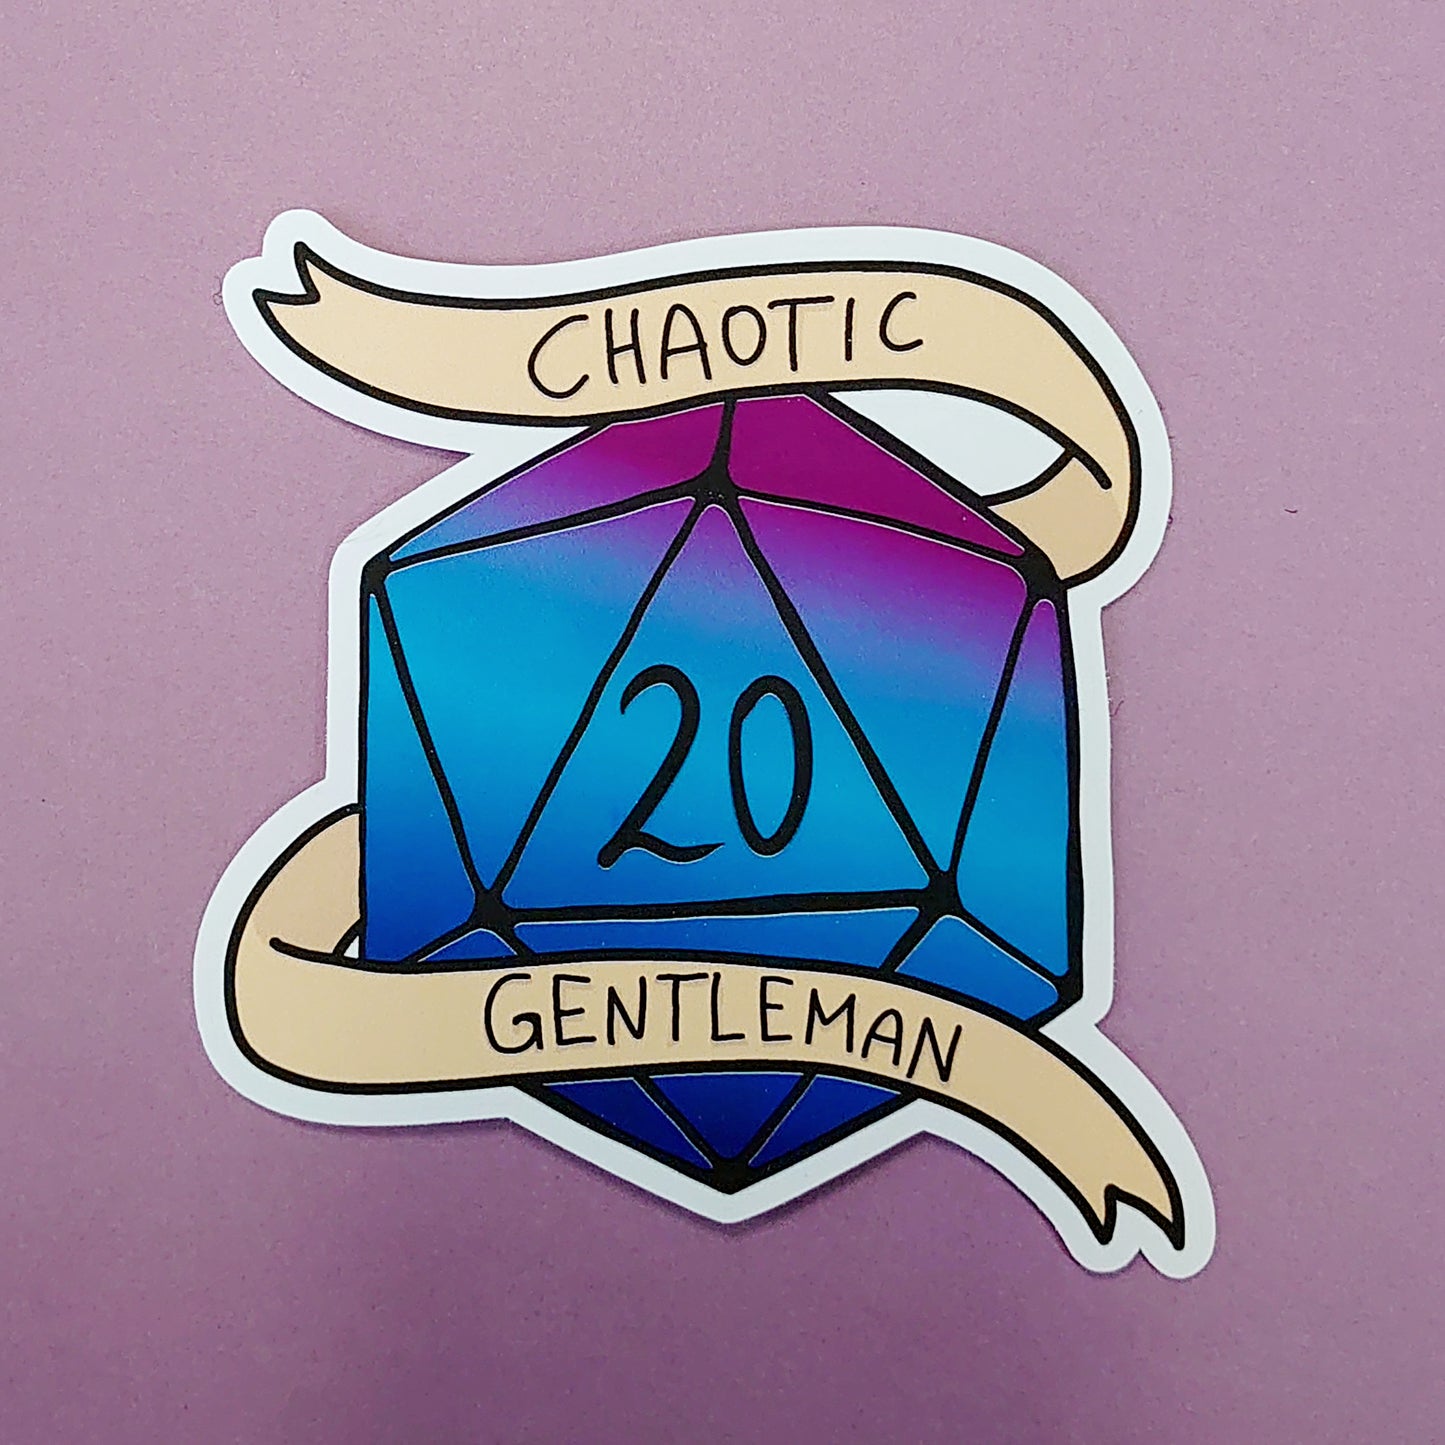 Chaotic Gentleman - W20 Würfel DnD Sticker - Fantasy Sticker